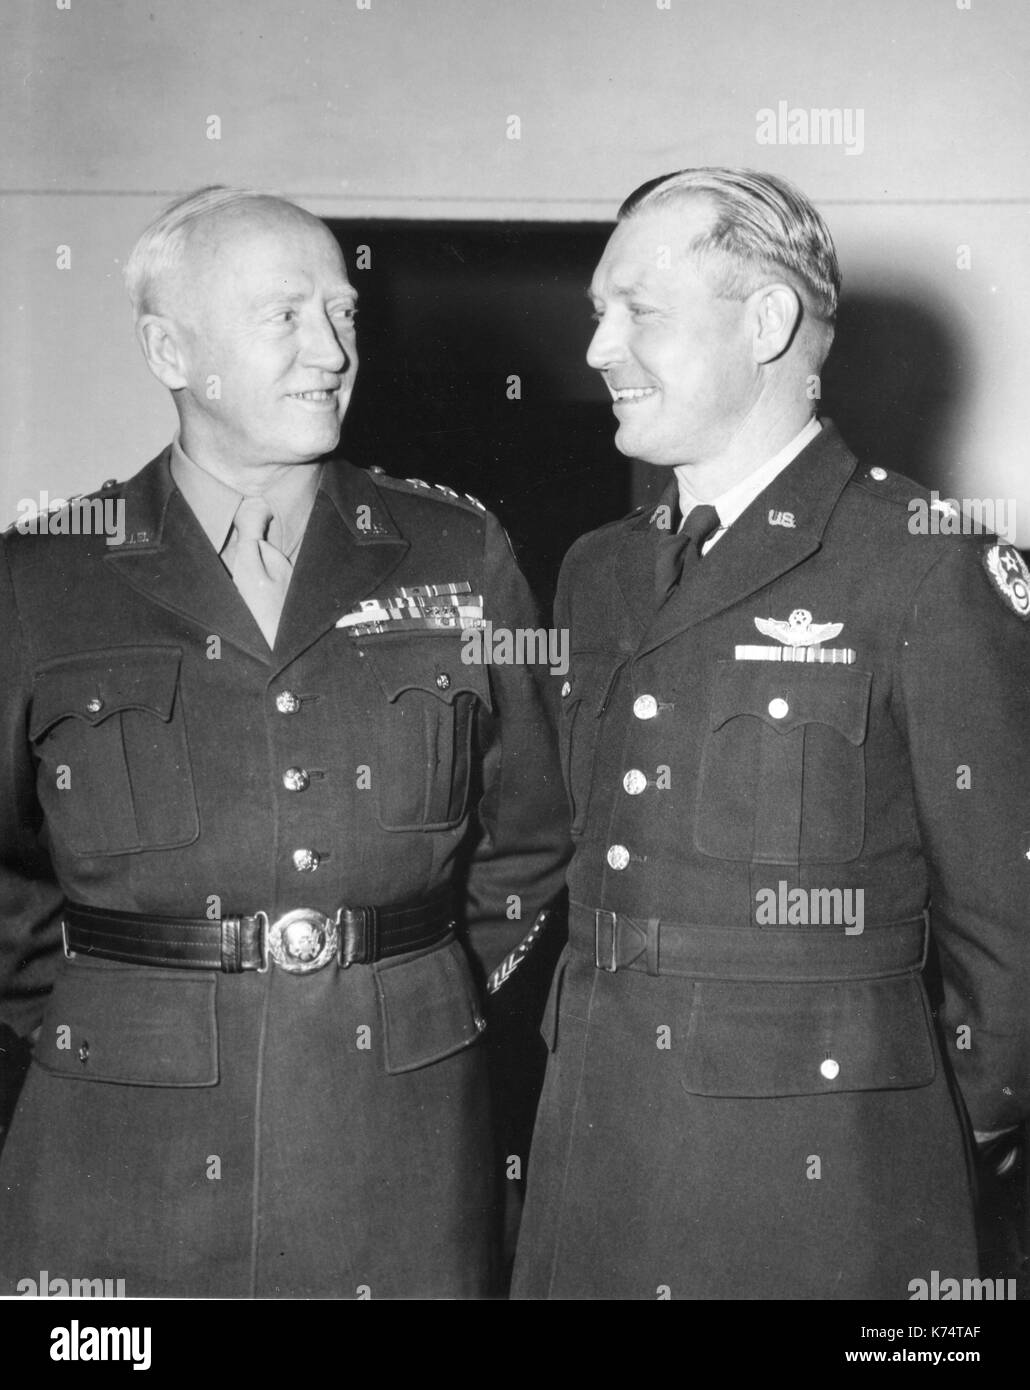 Brig Gen Otto P Weyland (rechts) von der 9., Luftwaffe, und Lt Gen George S Patton (links) der US-dritte Armee Pläne für Operationen gegen von Rundstedt Armeen in Belgien, Frankreich, 01/09/1945 diskutieren. Stockfoto